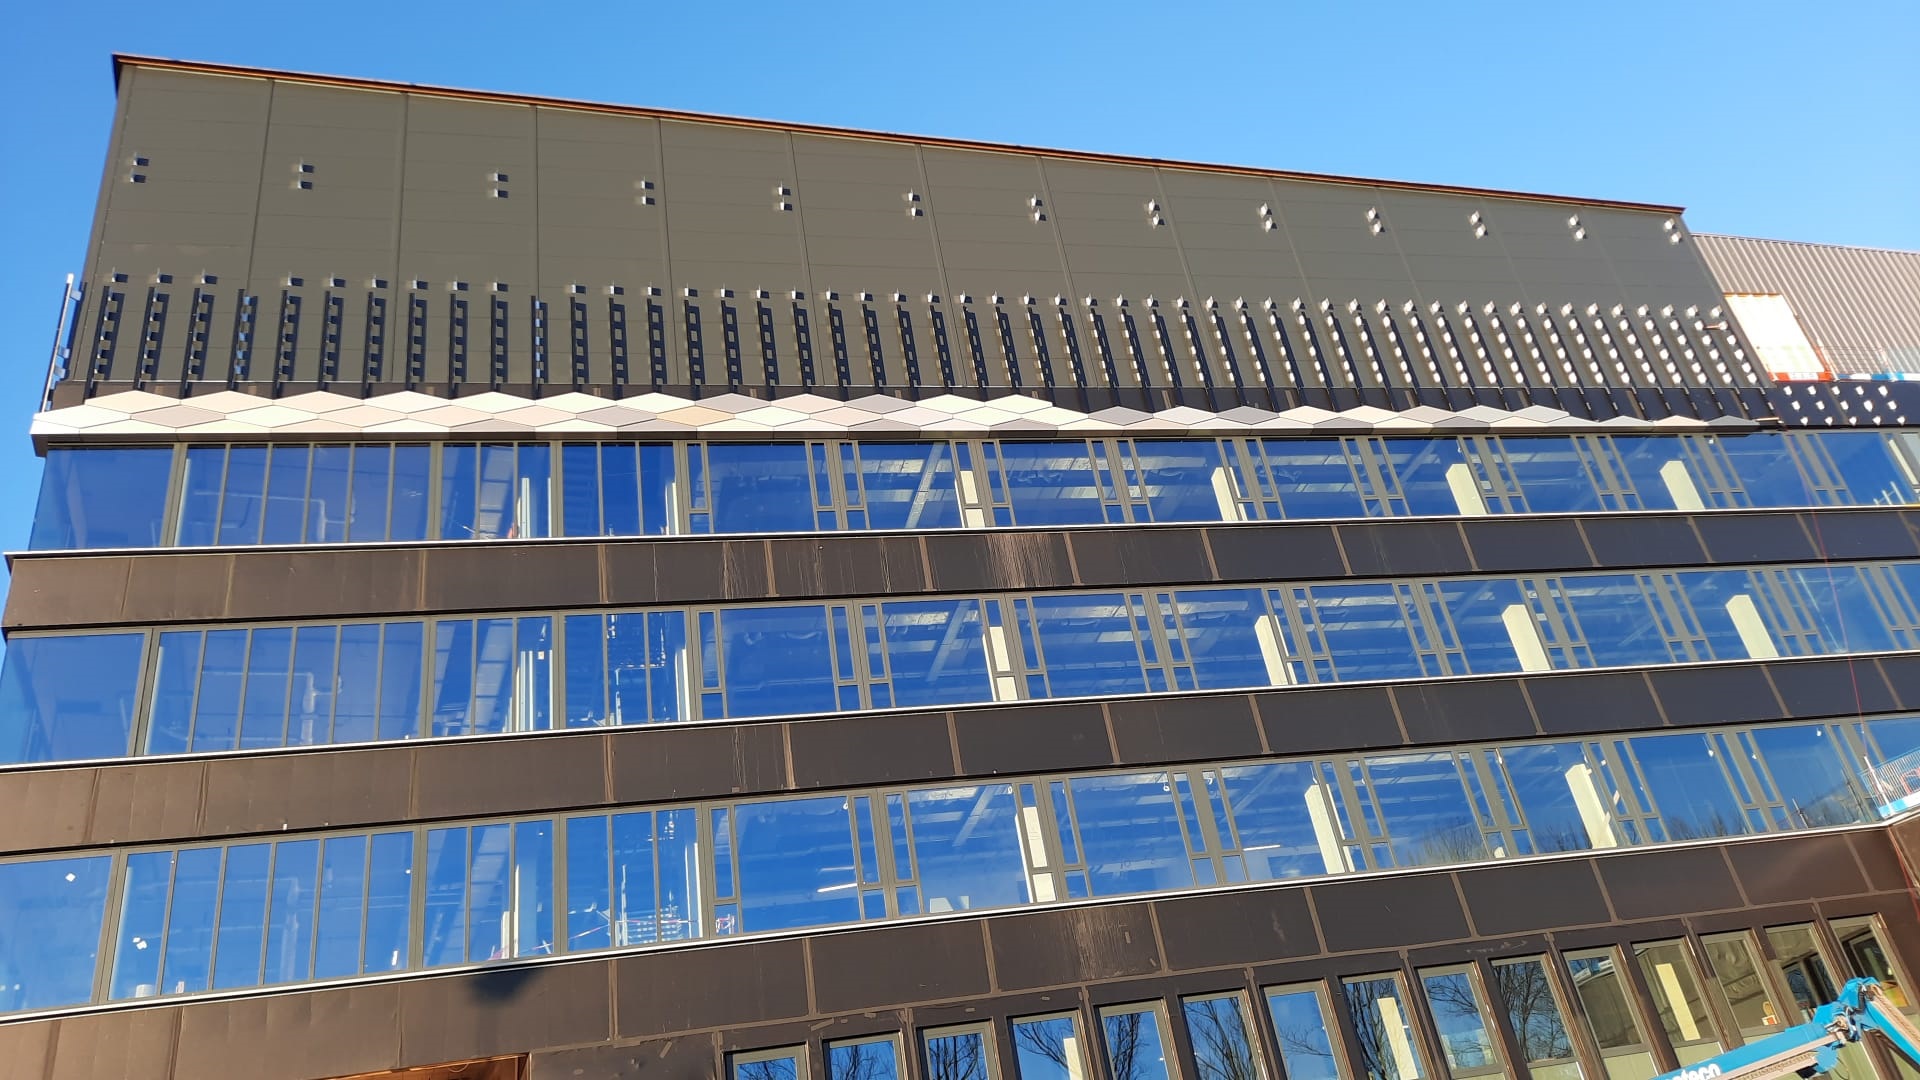 Eerste 'wybertjes' zijn aangebracht boven de hoogste ramen op de gevel van Feringa BuildingFirst 'wybert' slates have been installed above the highest windows on the façade of the Feringa Building